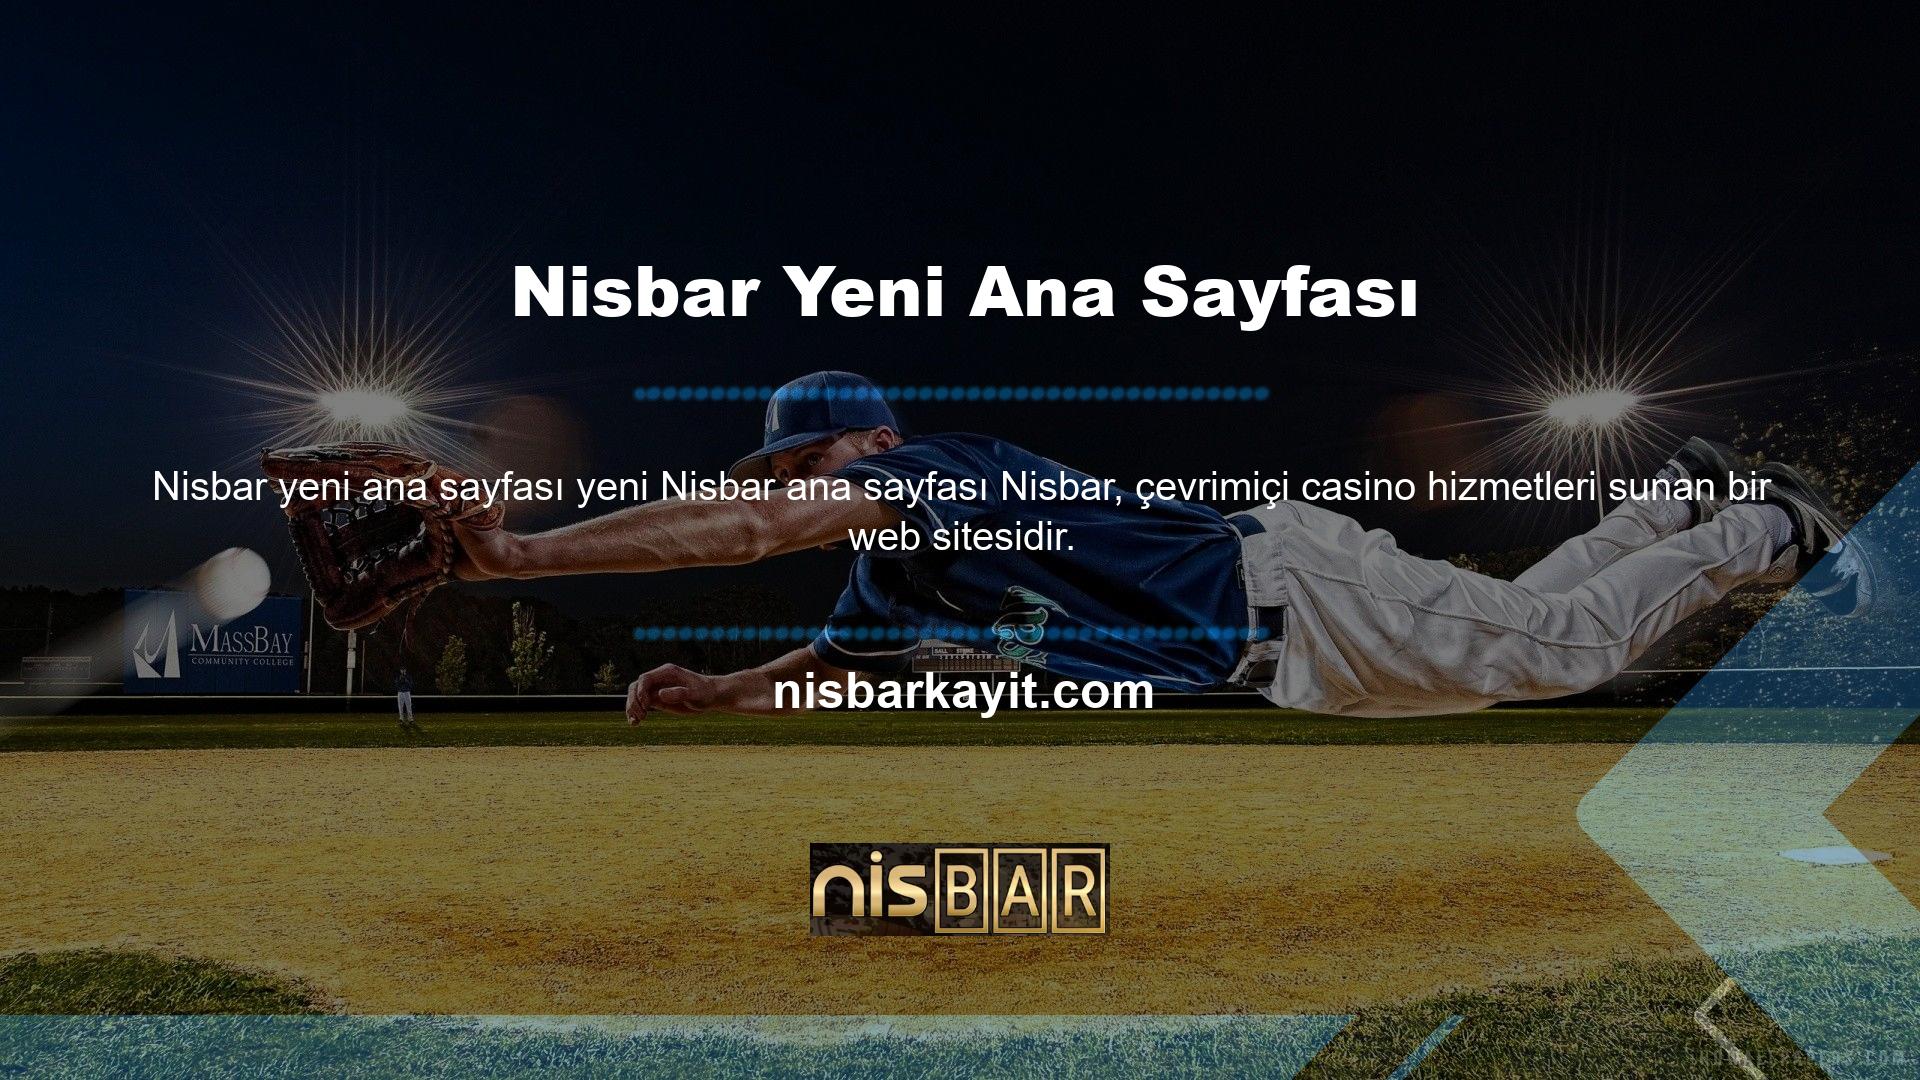 Nisbar, çevrimiçi casino hizmetleri sunan bir web sitesidir